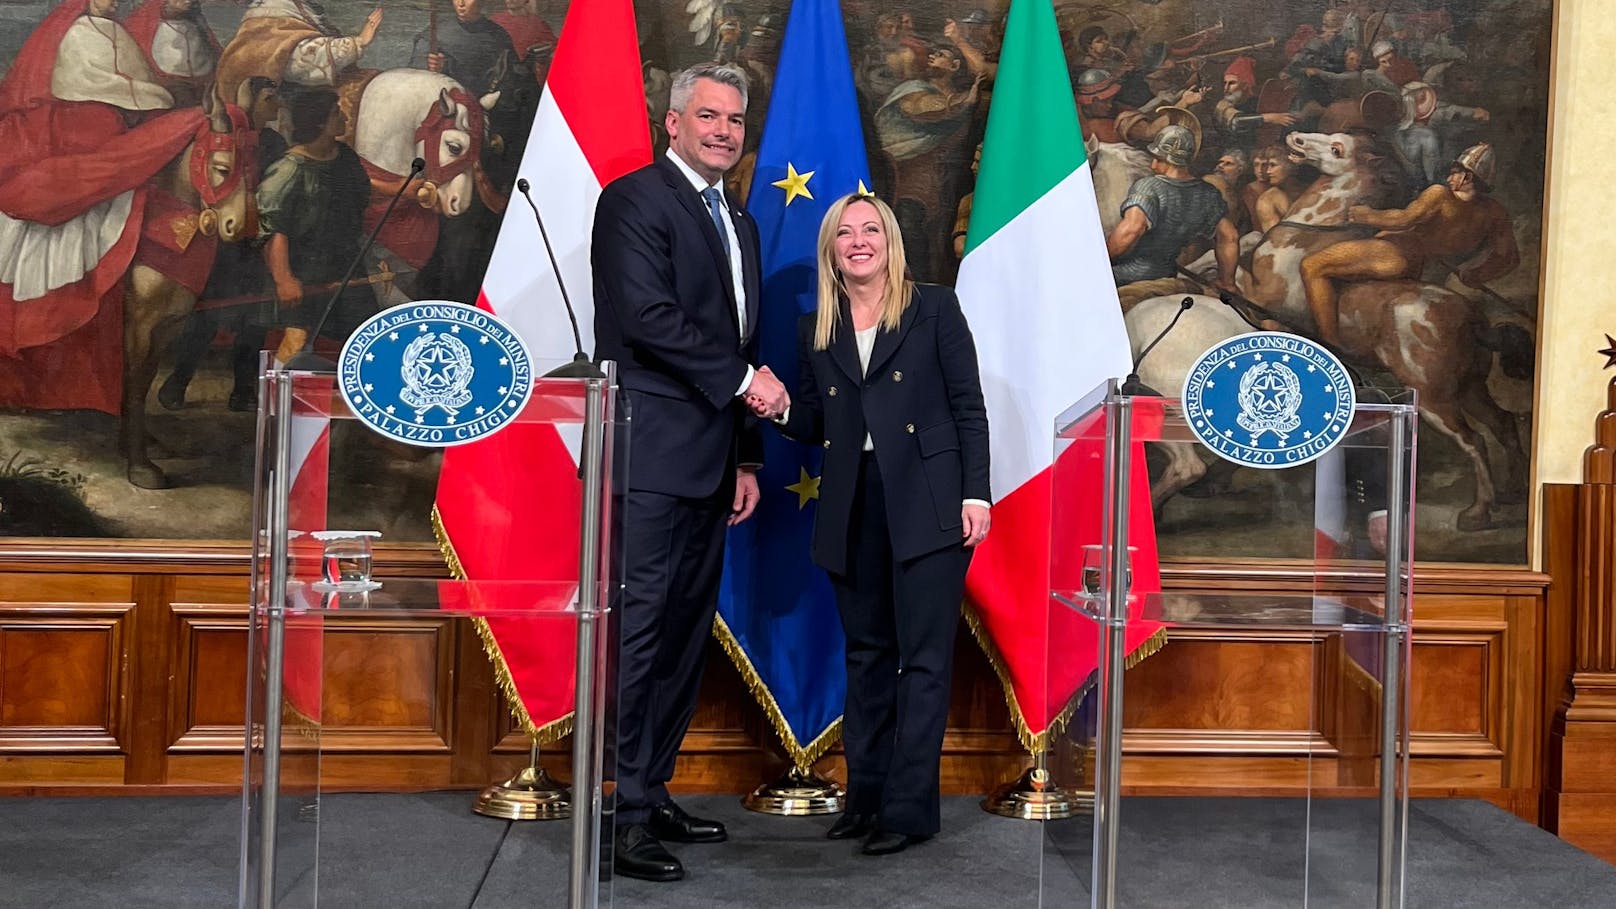 Meloni freue sich schon auf ihren Besuch in Wien, sagte die italienische Regierungschefin am Dienstag.